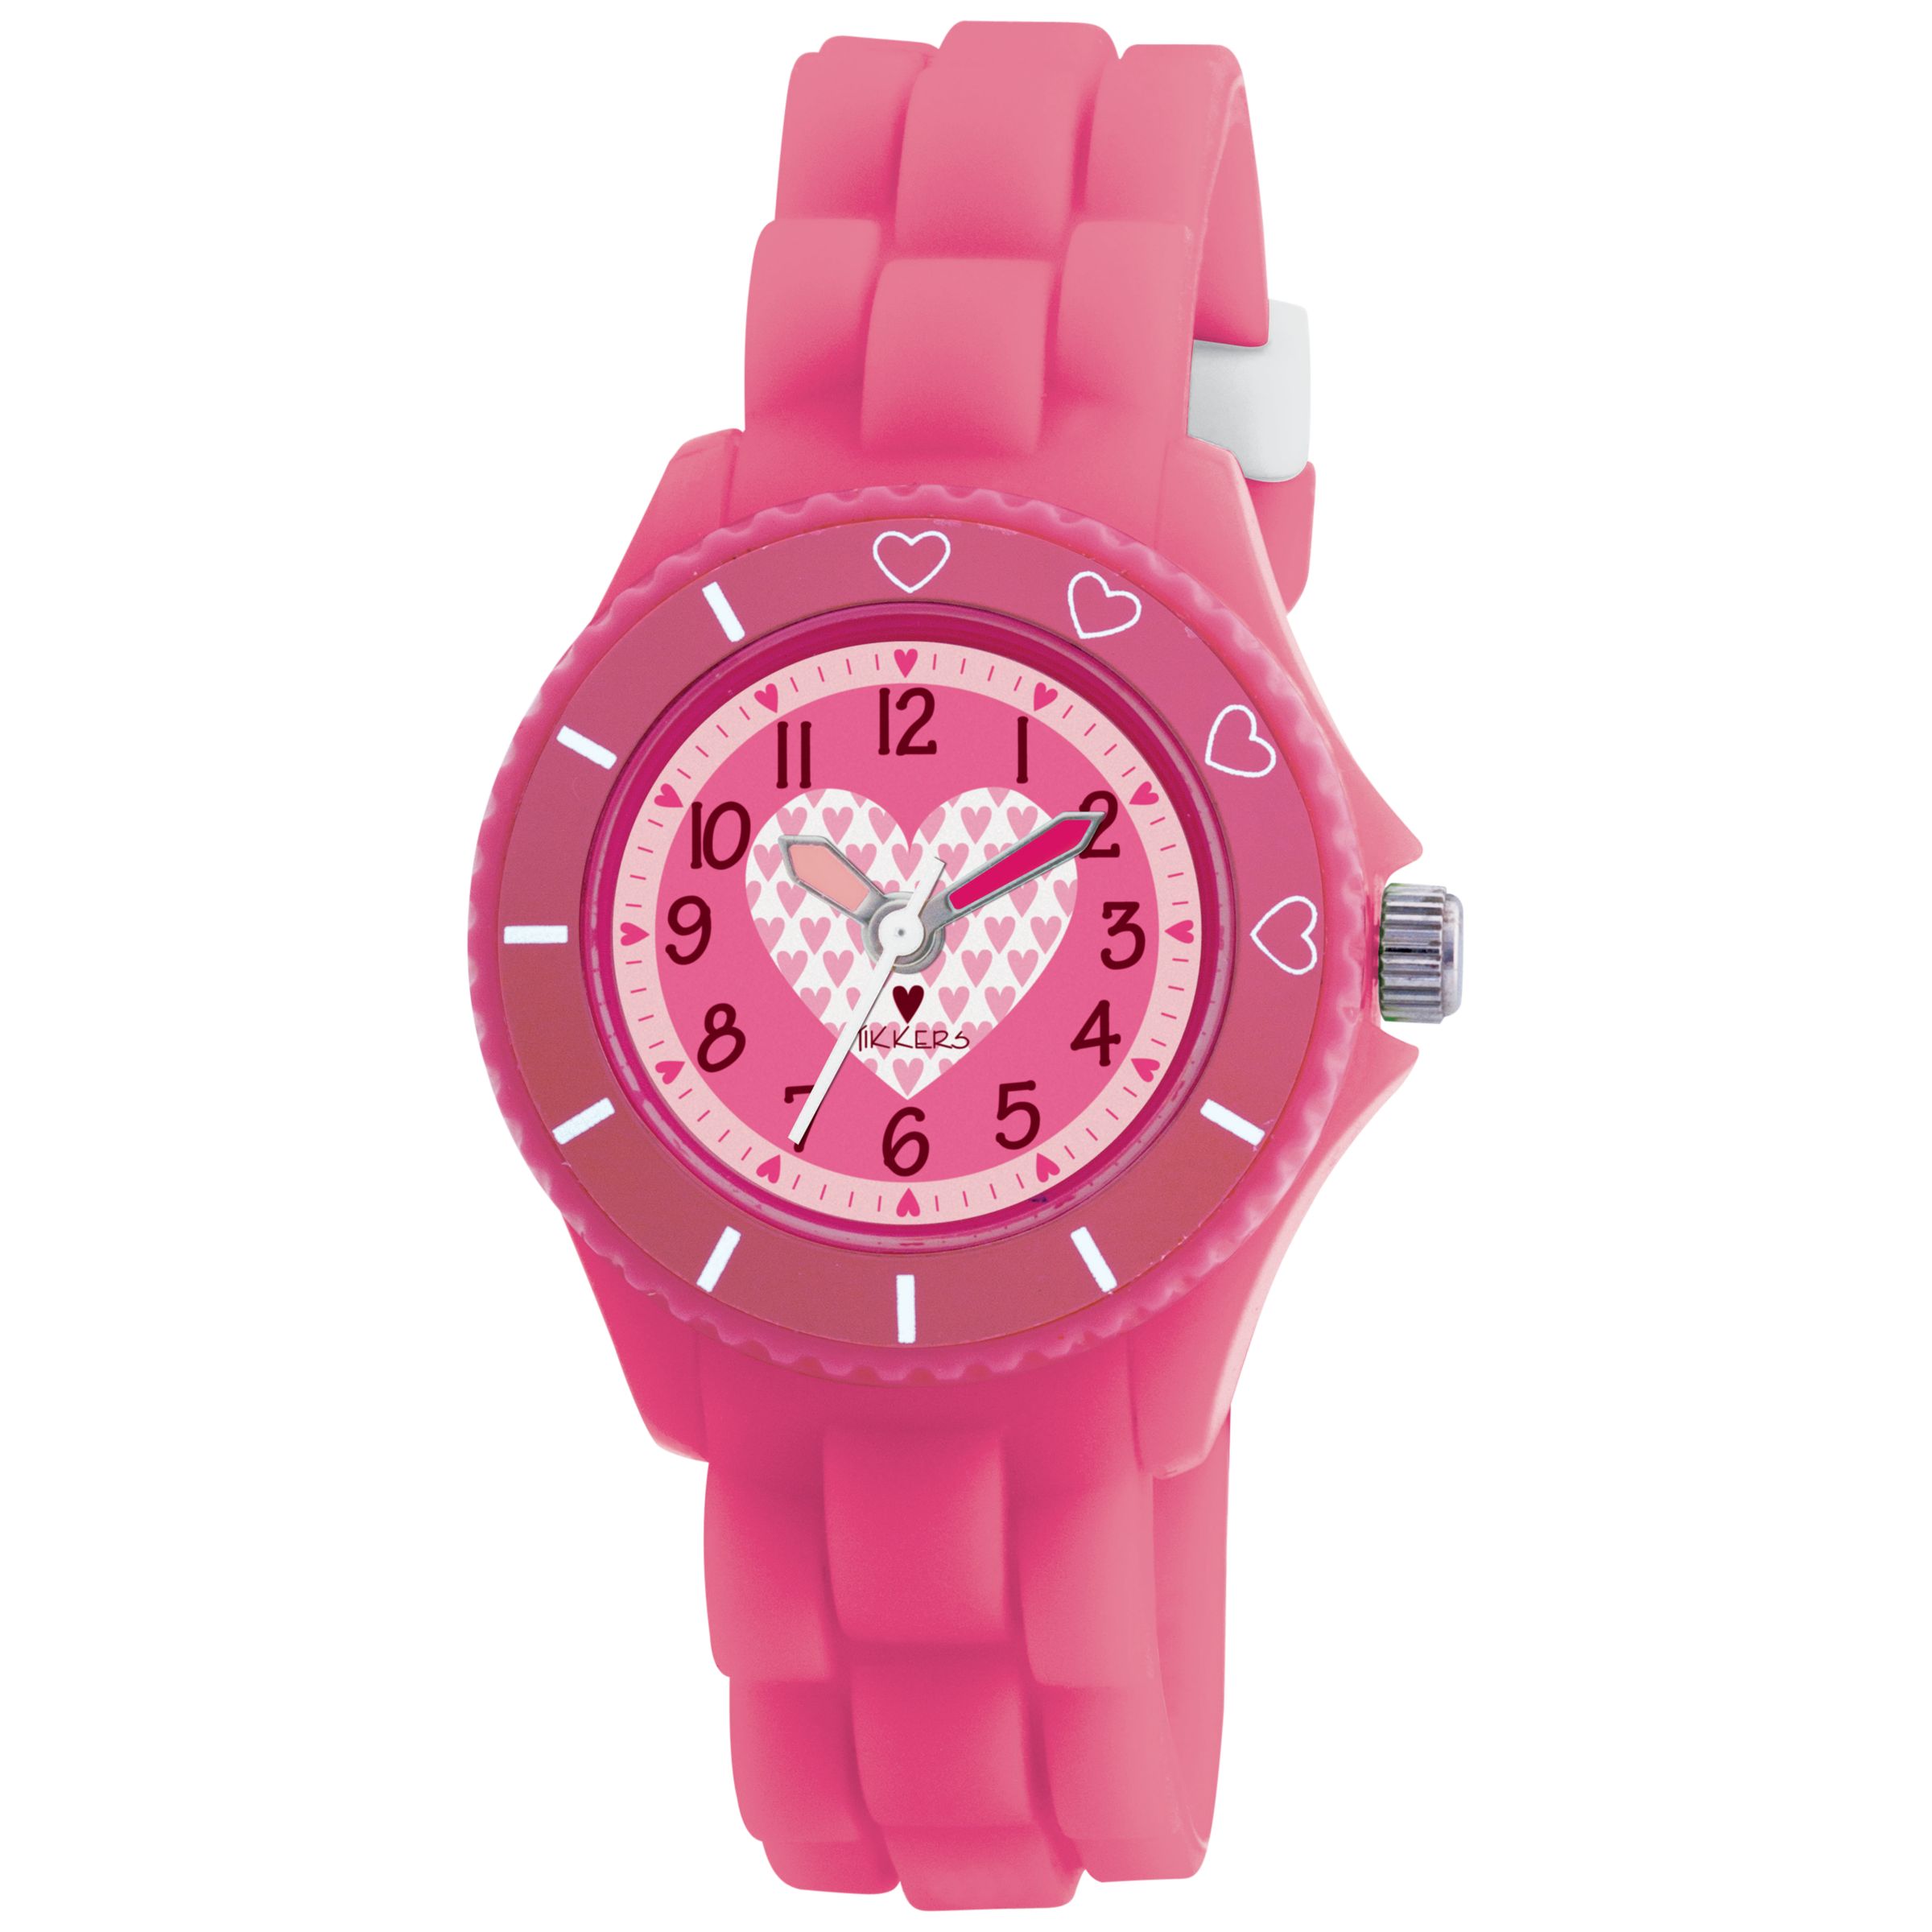 Tikkers TK0023 Kids Heart Rubber Strap Watch, Pink